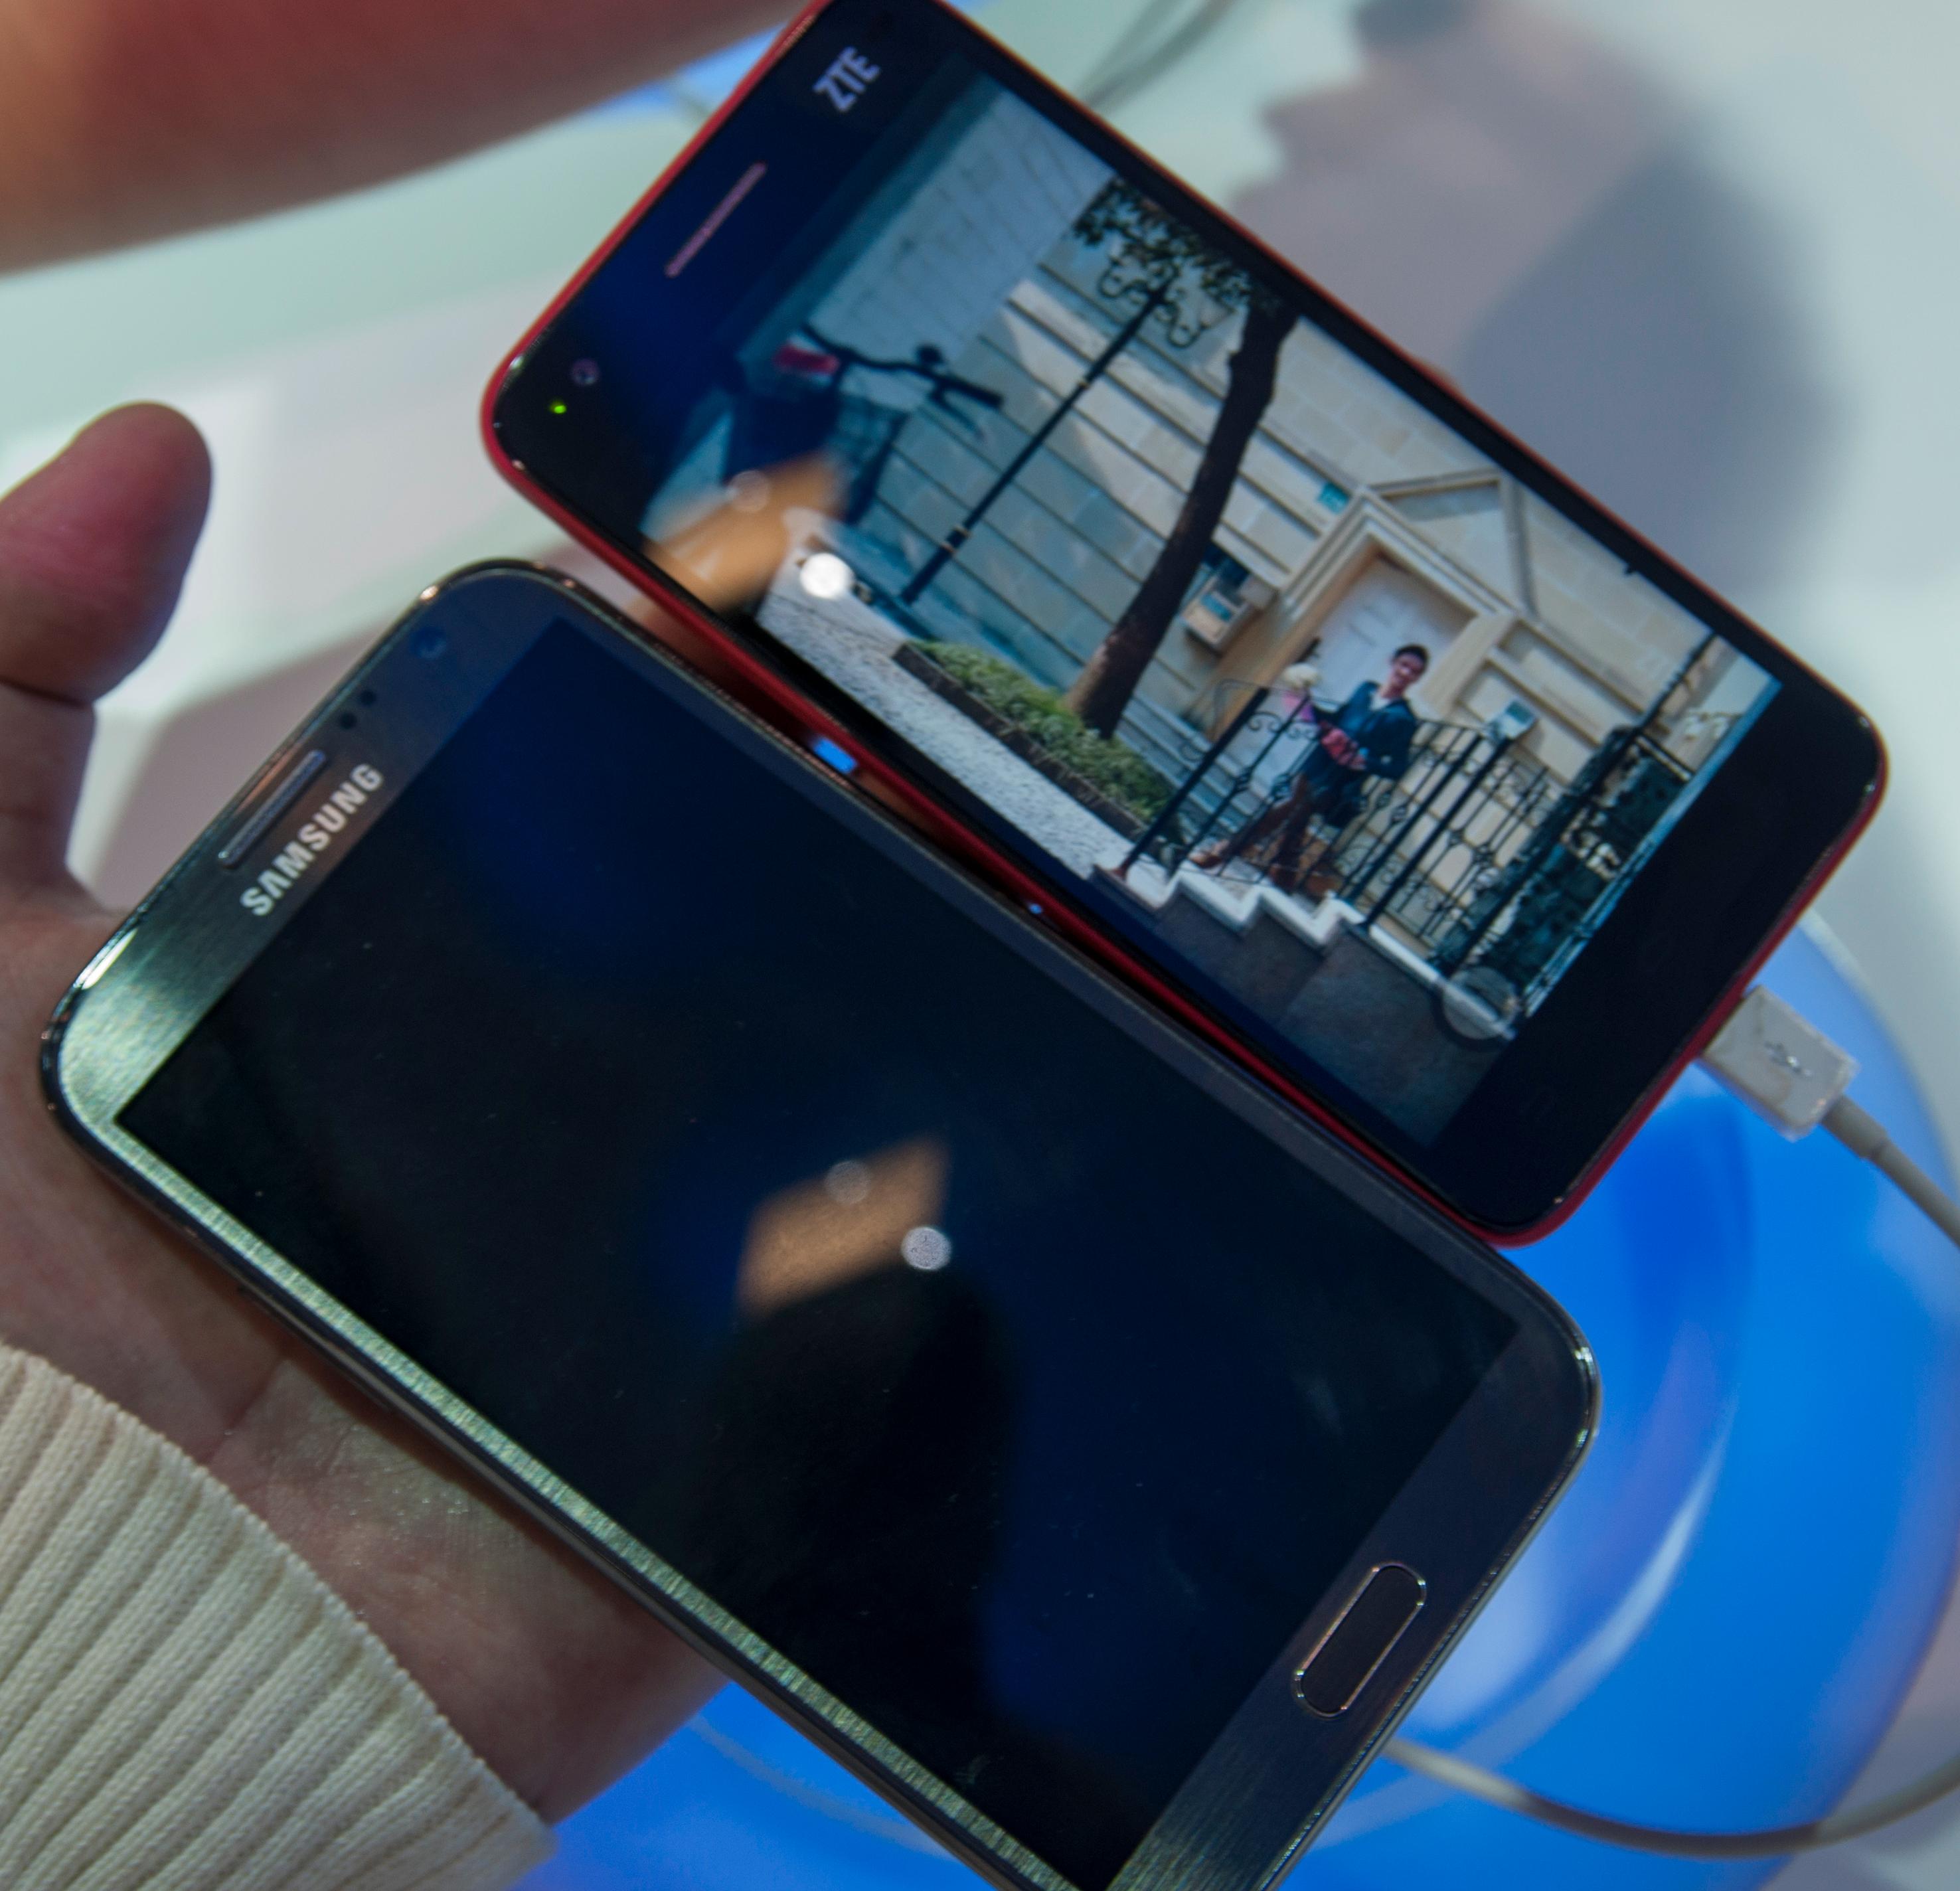 Ved siden av kjempen Galaxy Note II er Grand S relativt kompakt. Det er likevel en voksen mobiltelefon som du nok bør ha store hender for å trives med.Foto: Finn Jarle Kvalheim, Amobil.no